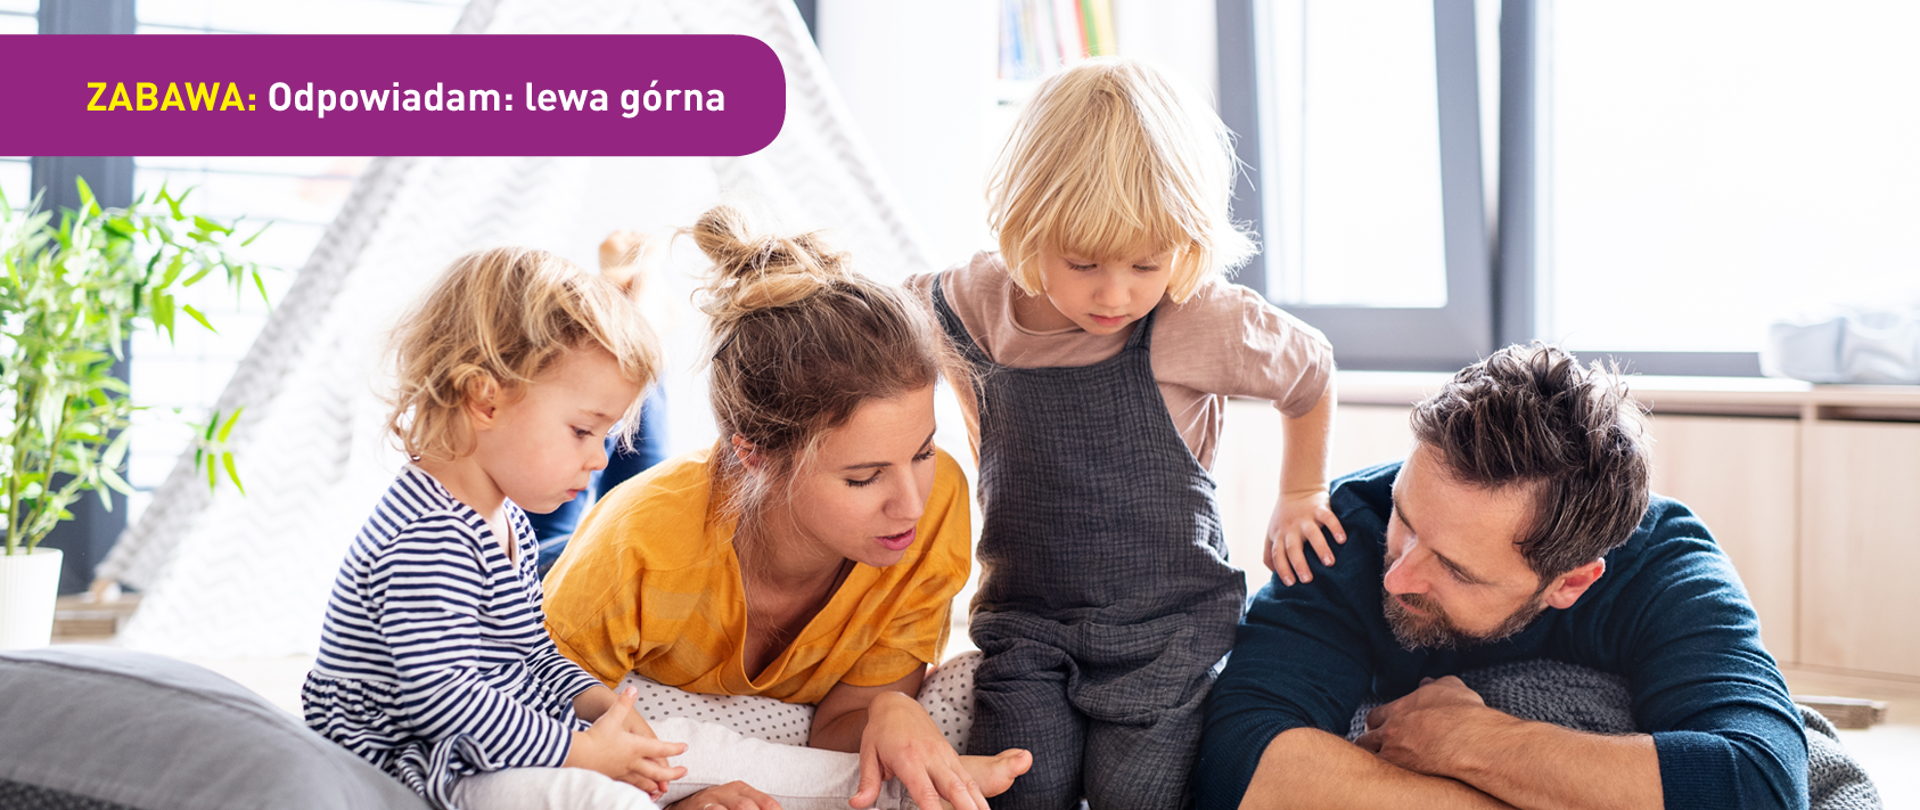 Zdjęcie przedstawia rodzinę (mężczyzna, kobieta i dwójka małych dzieci) czytającą razem książkę z obrazkami. U dołu znajduje się pasek logotypów: Europejskie Fundusze Polska Cyfrowa, Ministerstwo Cyfryzacji, NASK i Unia Europejska Europejski Fundusz Rozwoju Regionalnego.